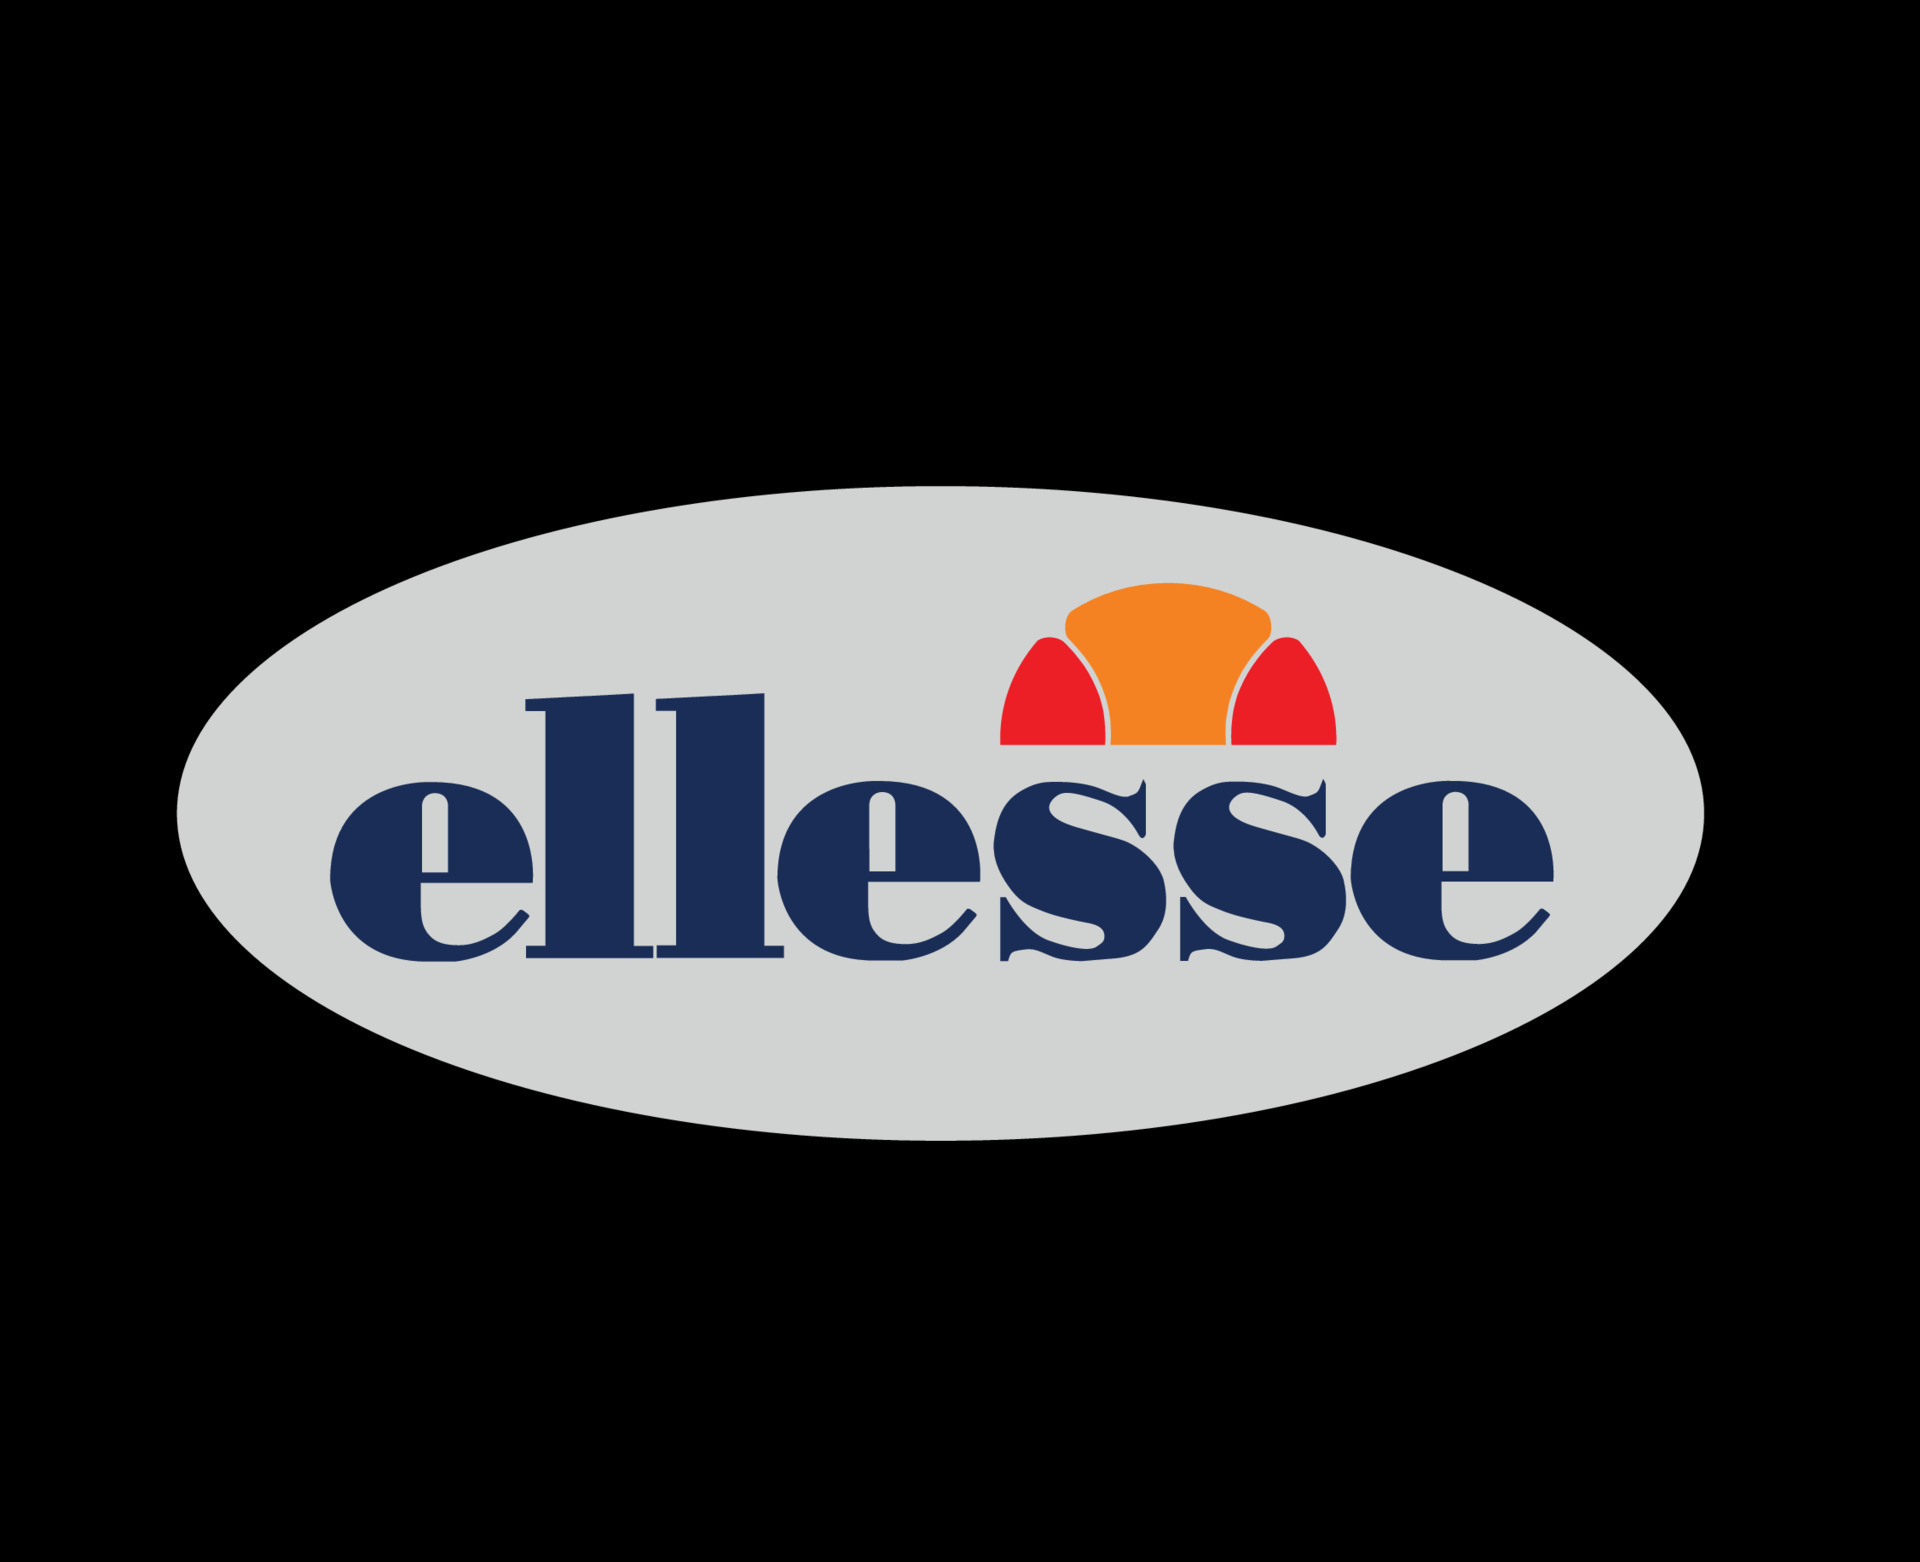 Ellesse Brand Symbol Clothes Logo Design Vector Illustration With Black ...